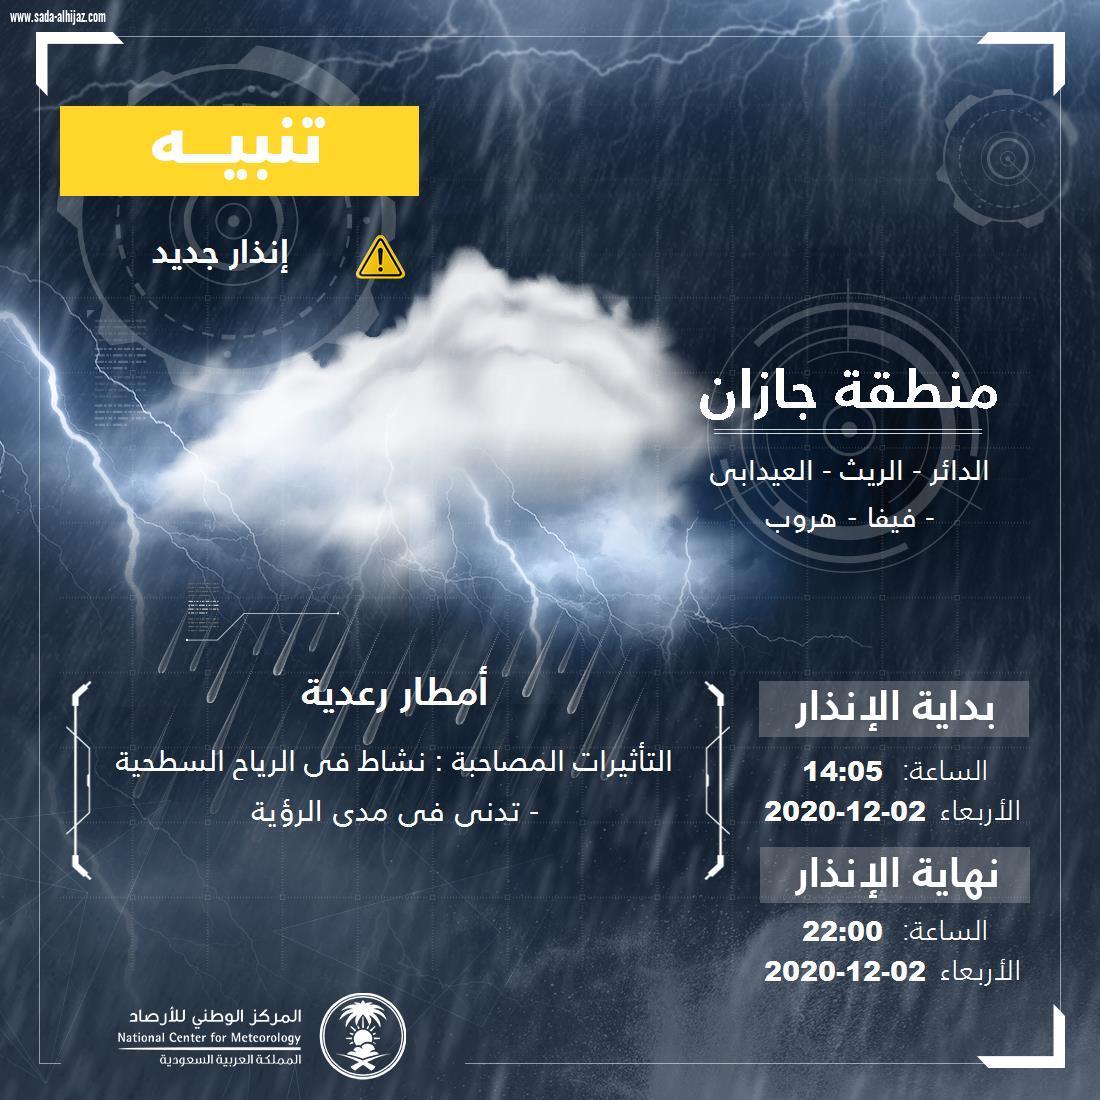 الدفاع المدني يهيب بالجميع إلى توخي الحذر لإحتمالية هطول أمطار رعدية على بعض مناطق المملكة